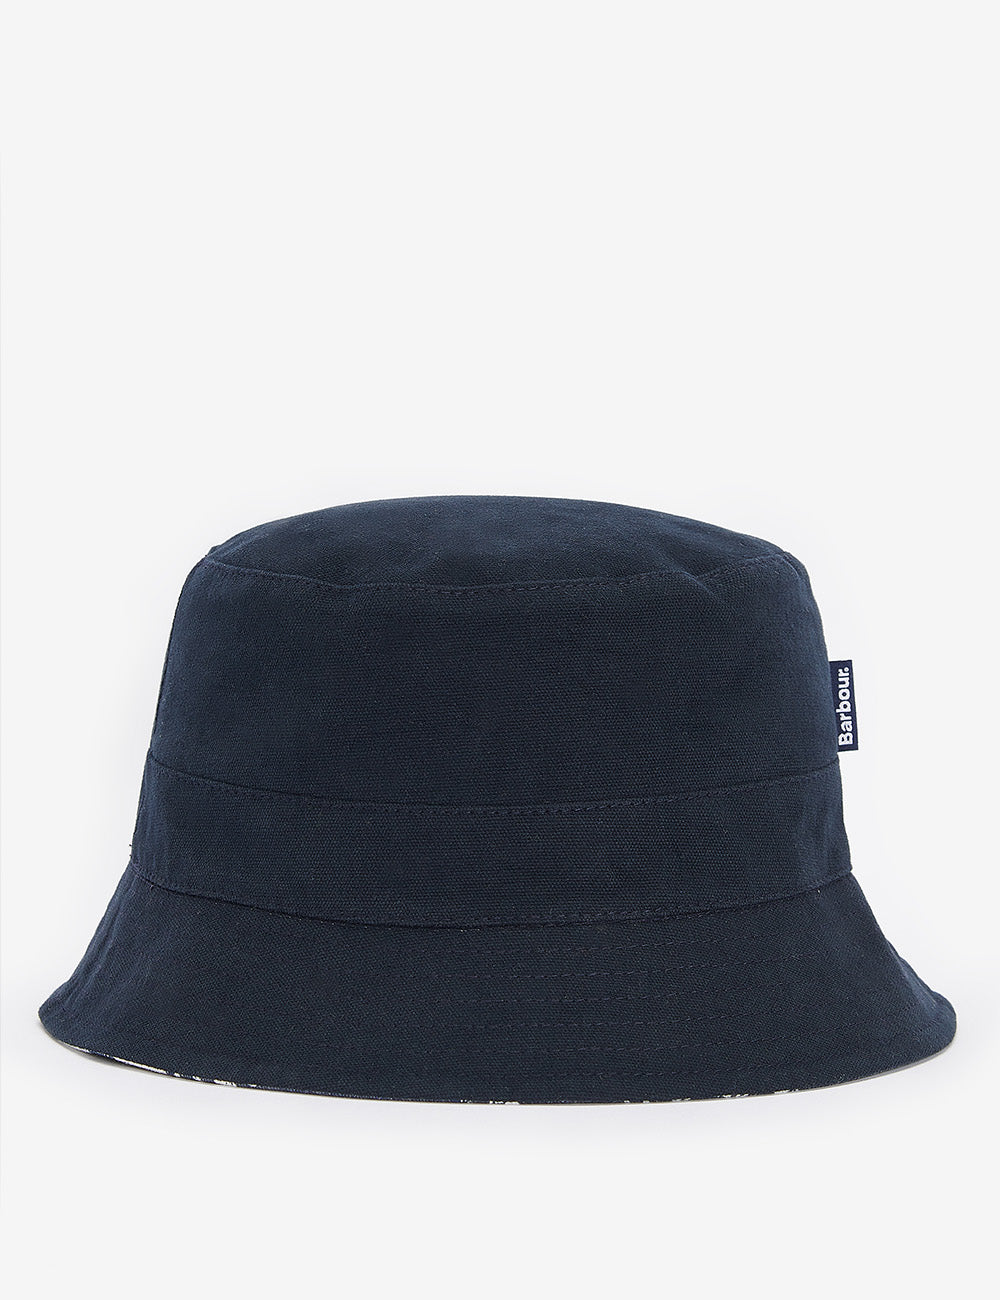 Barbour Cornwall Reversible Bucket Hat - Navy